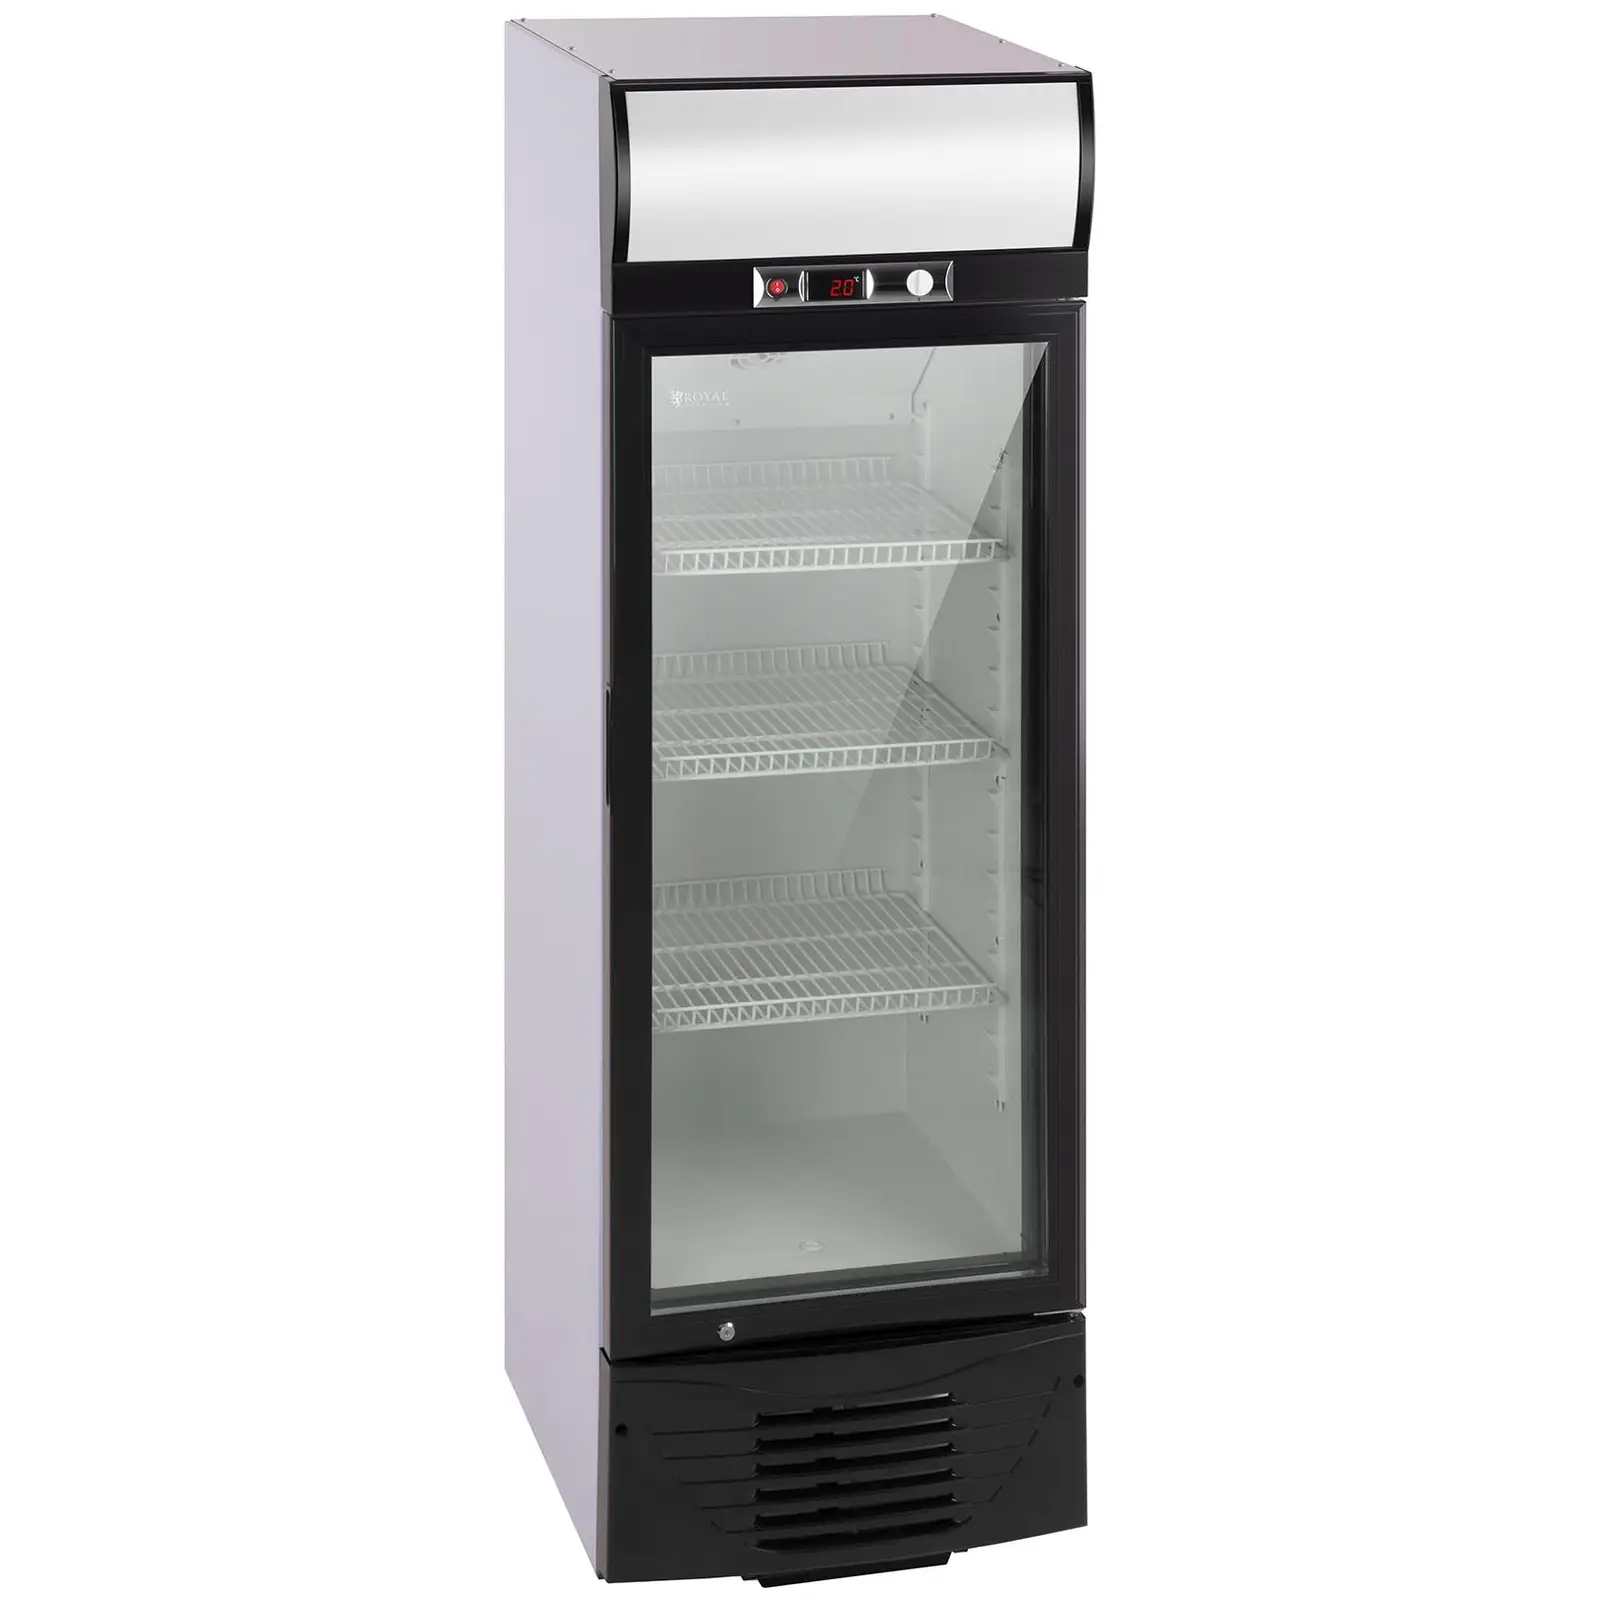 Arca refrigeradora - 238 l